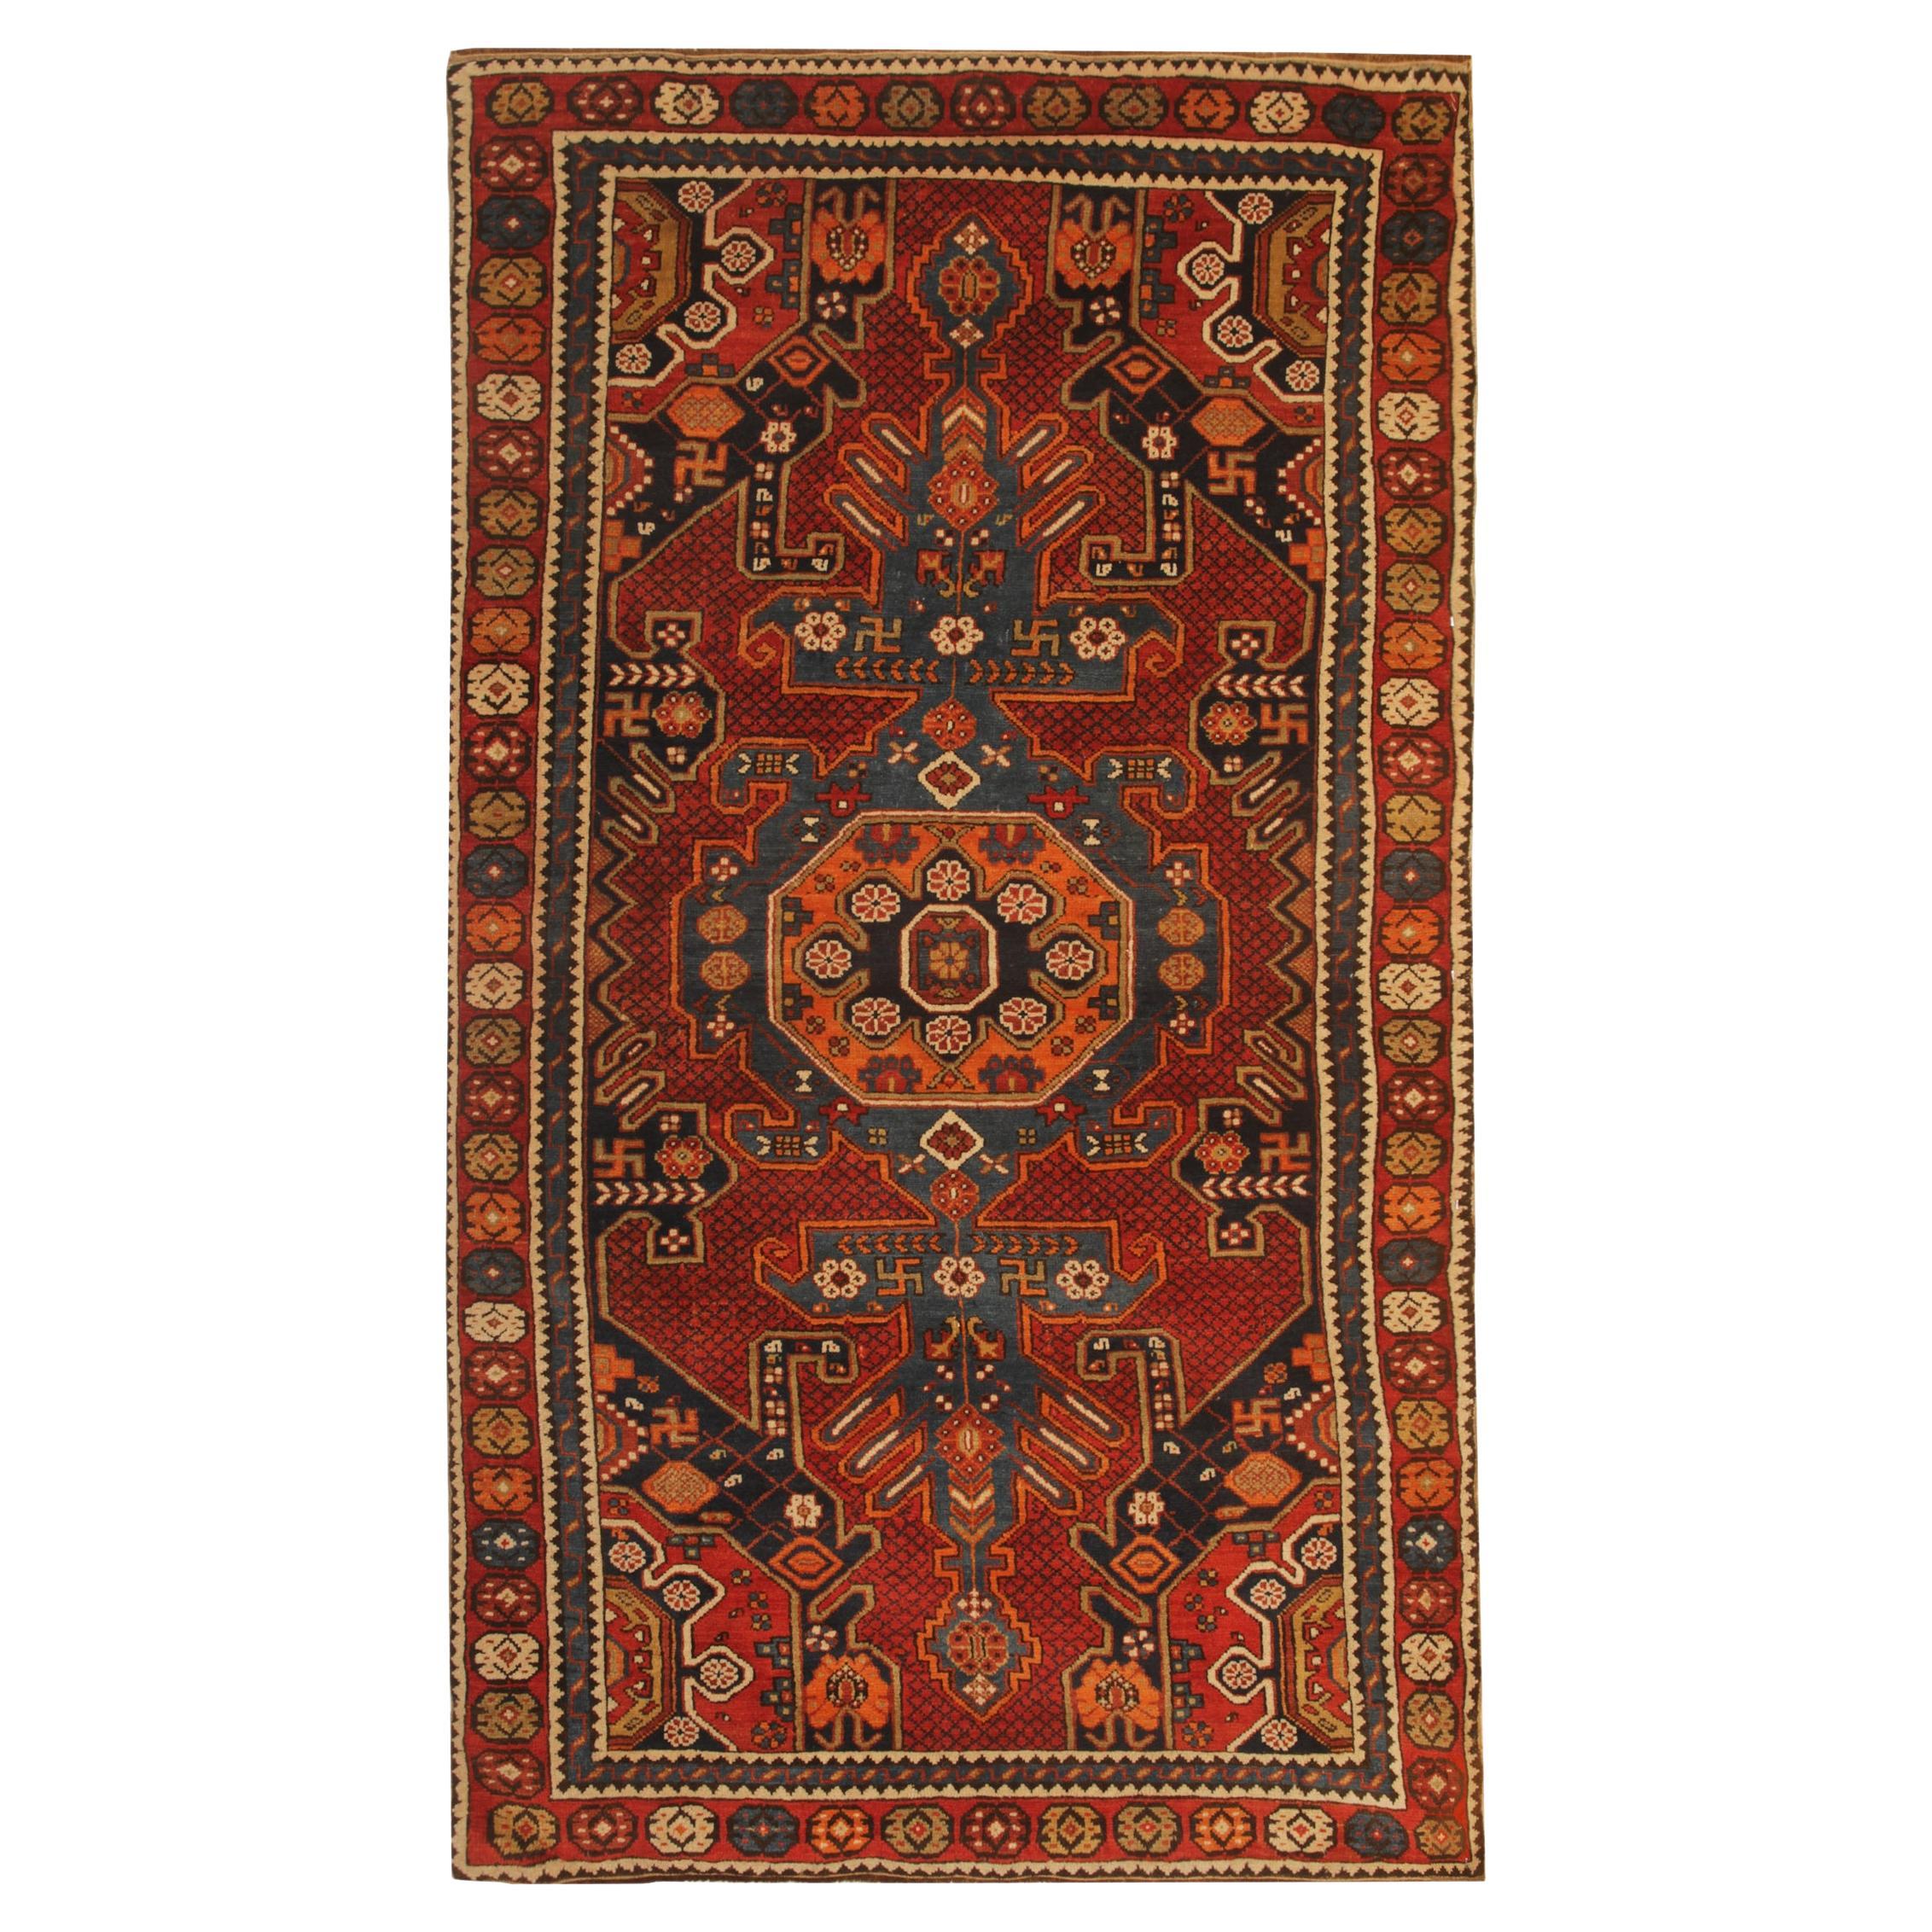 Seltener antiker kaukasischer orientalischer Teppich, handgefertigter, rustikaler Shirvan-Teppich